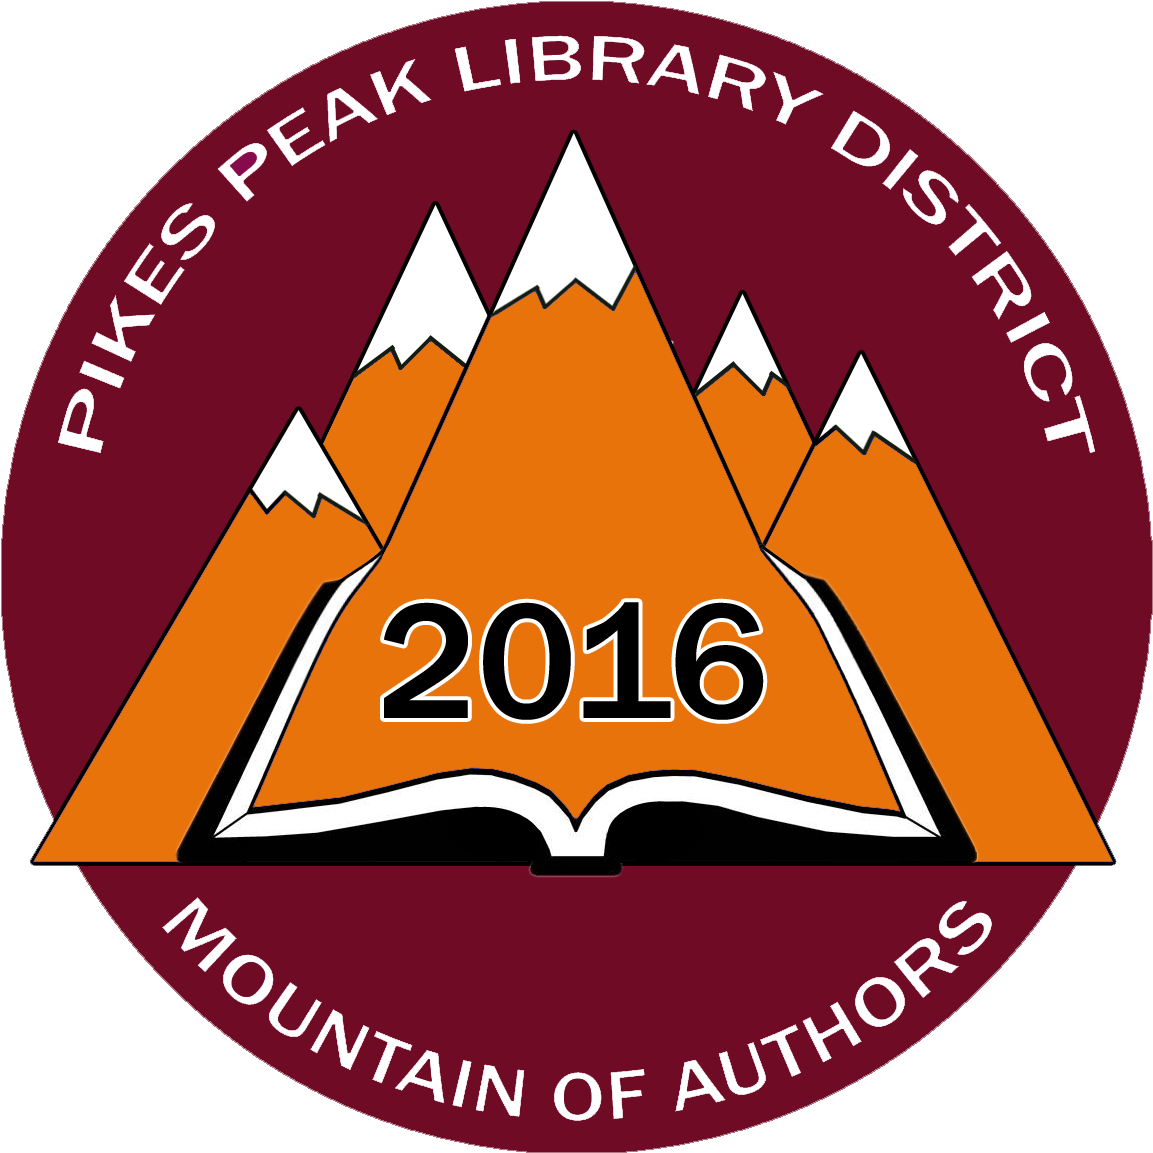 Pikes Peak Library 21c, Colorado Springs, Colorado - Graphic Design (1440x1440)